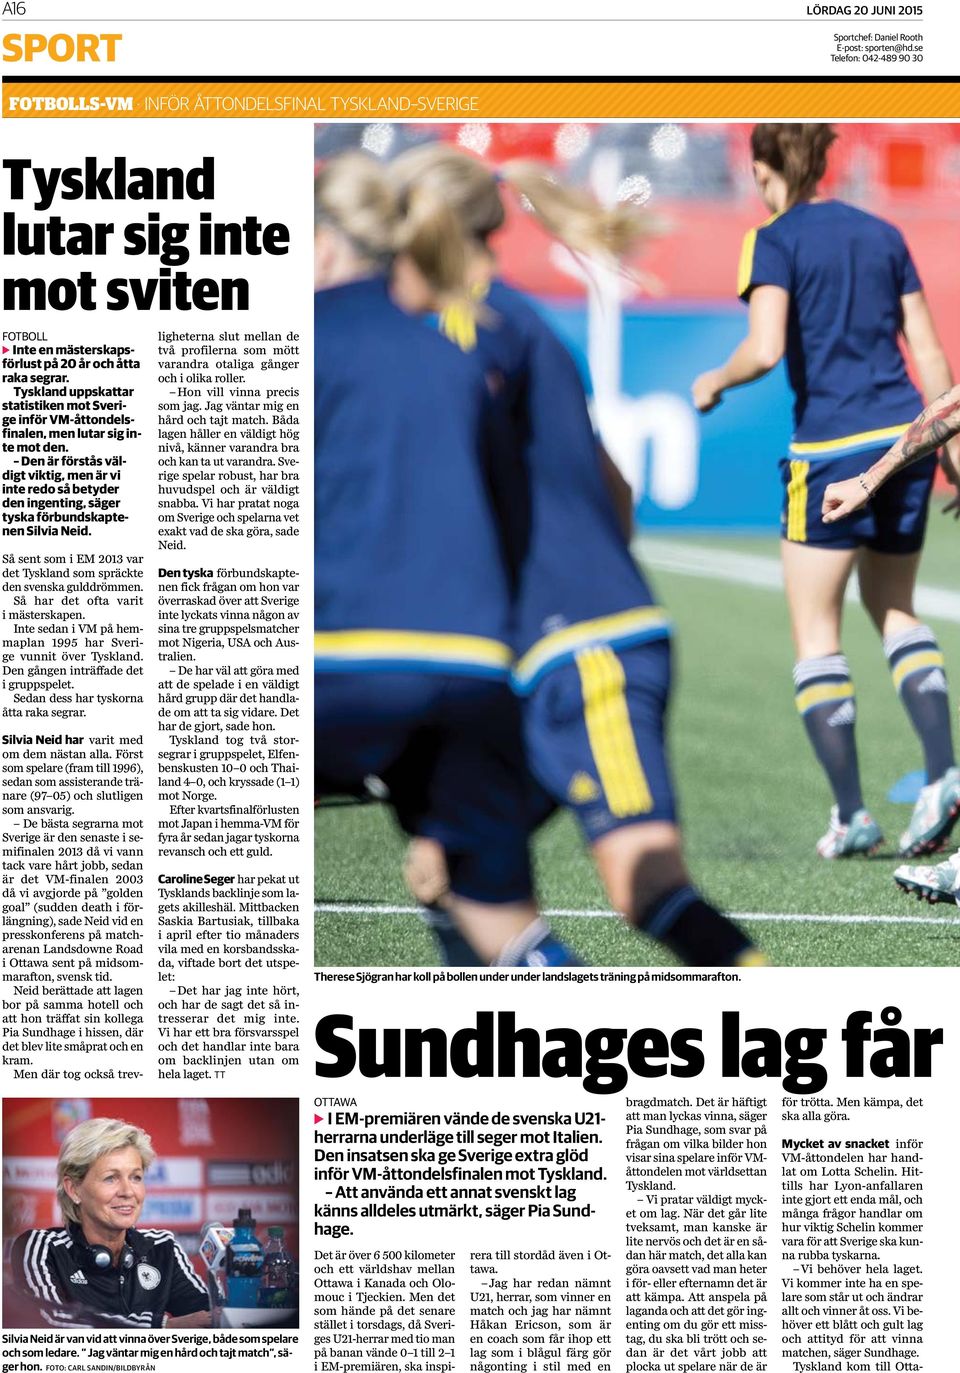 Tyskland uppskattar statistiken mot Sverige inför VM-åttondelsfinalen, men lutar sig inte mot den.